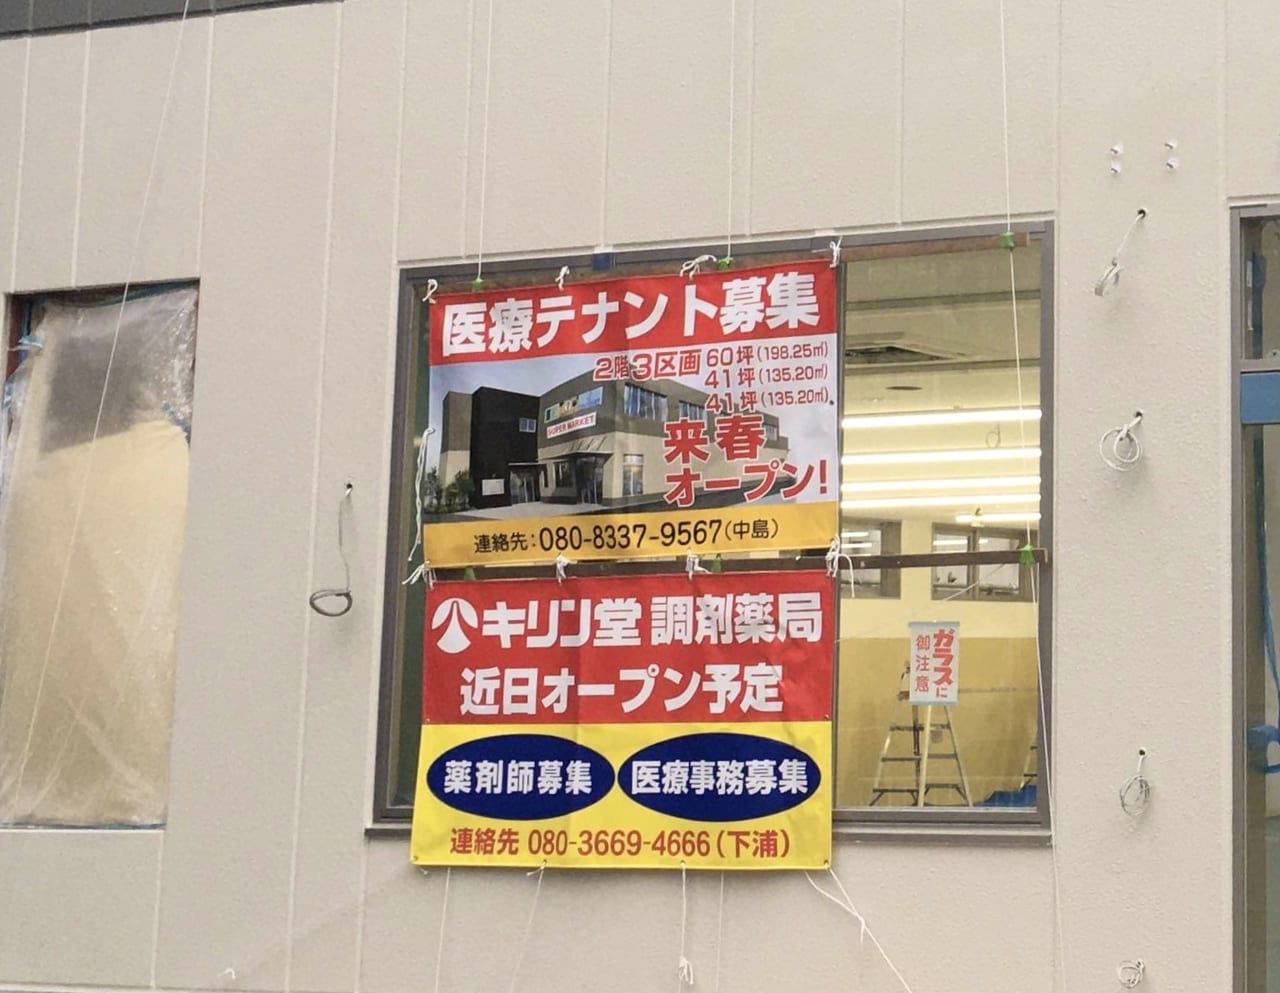 東大阪市 21年1月open予定 布施のパーラーダイエイ跡に 食品スーパー Fresco フレスコ がオープンします 号外net 東大阪市